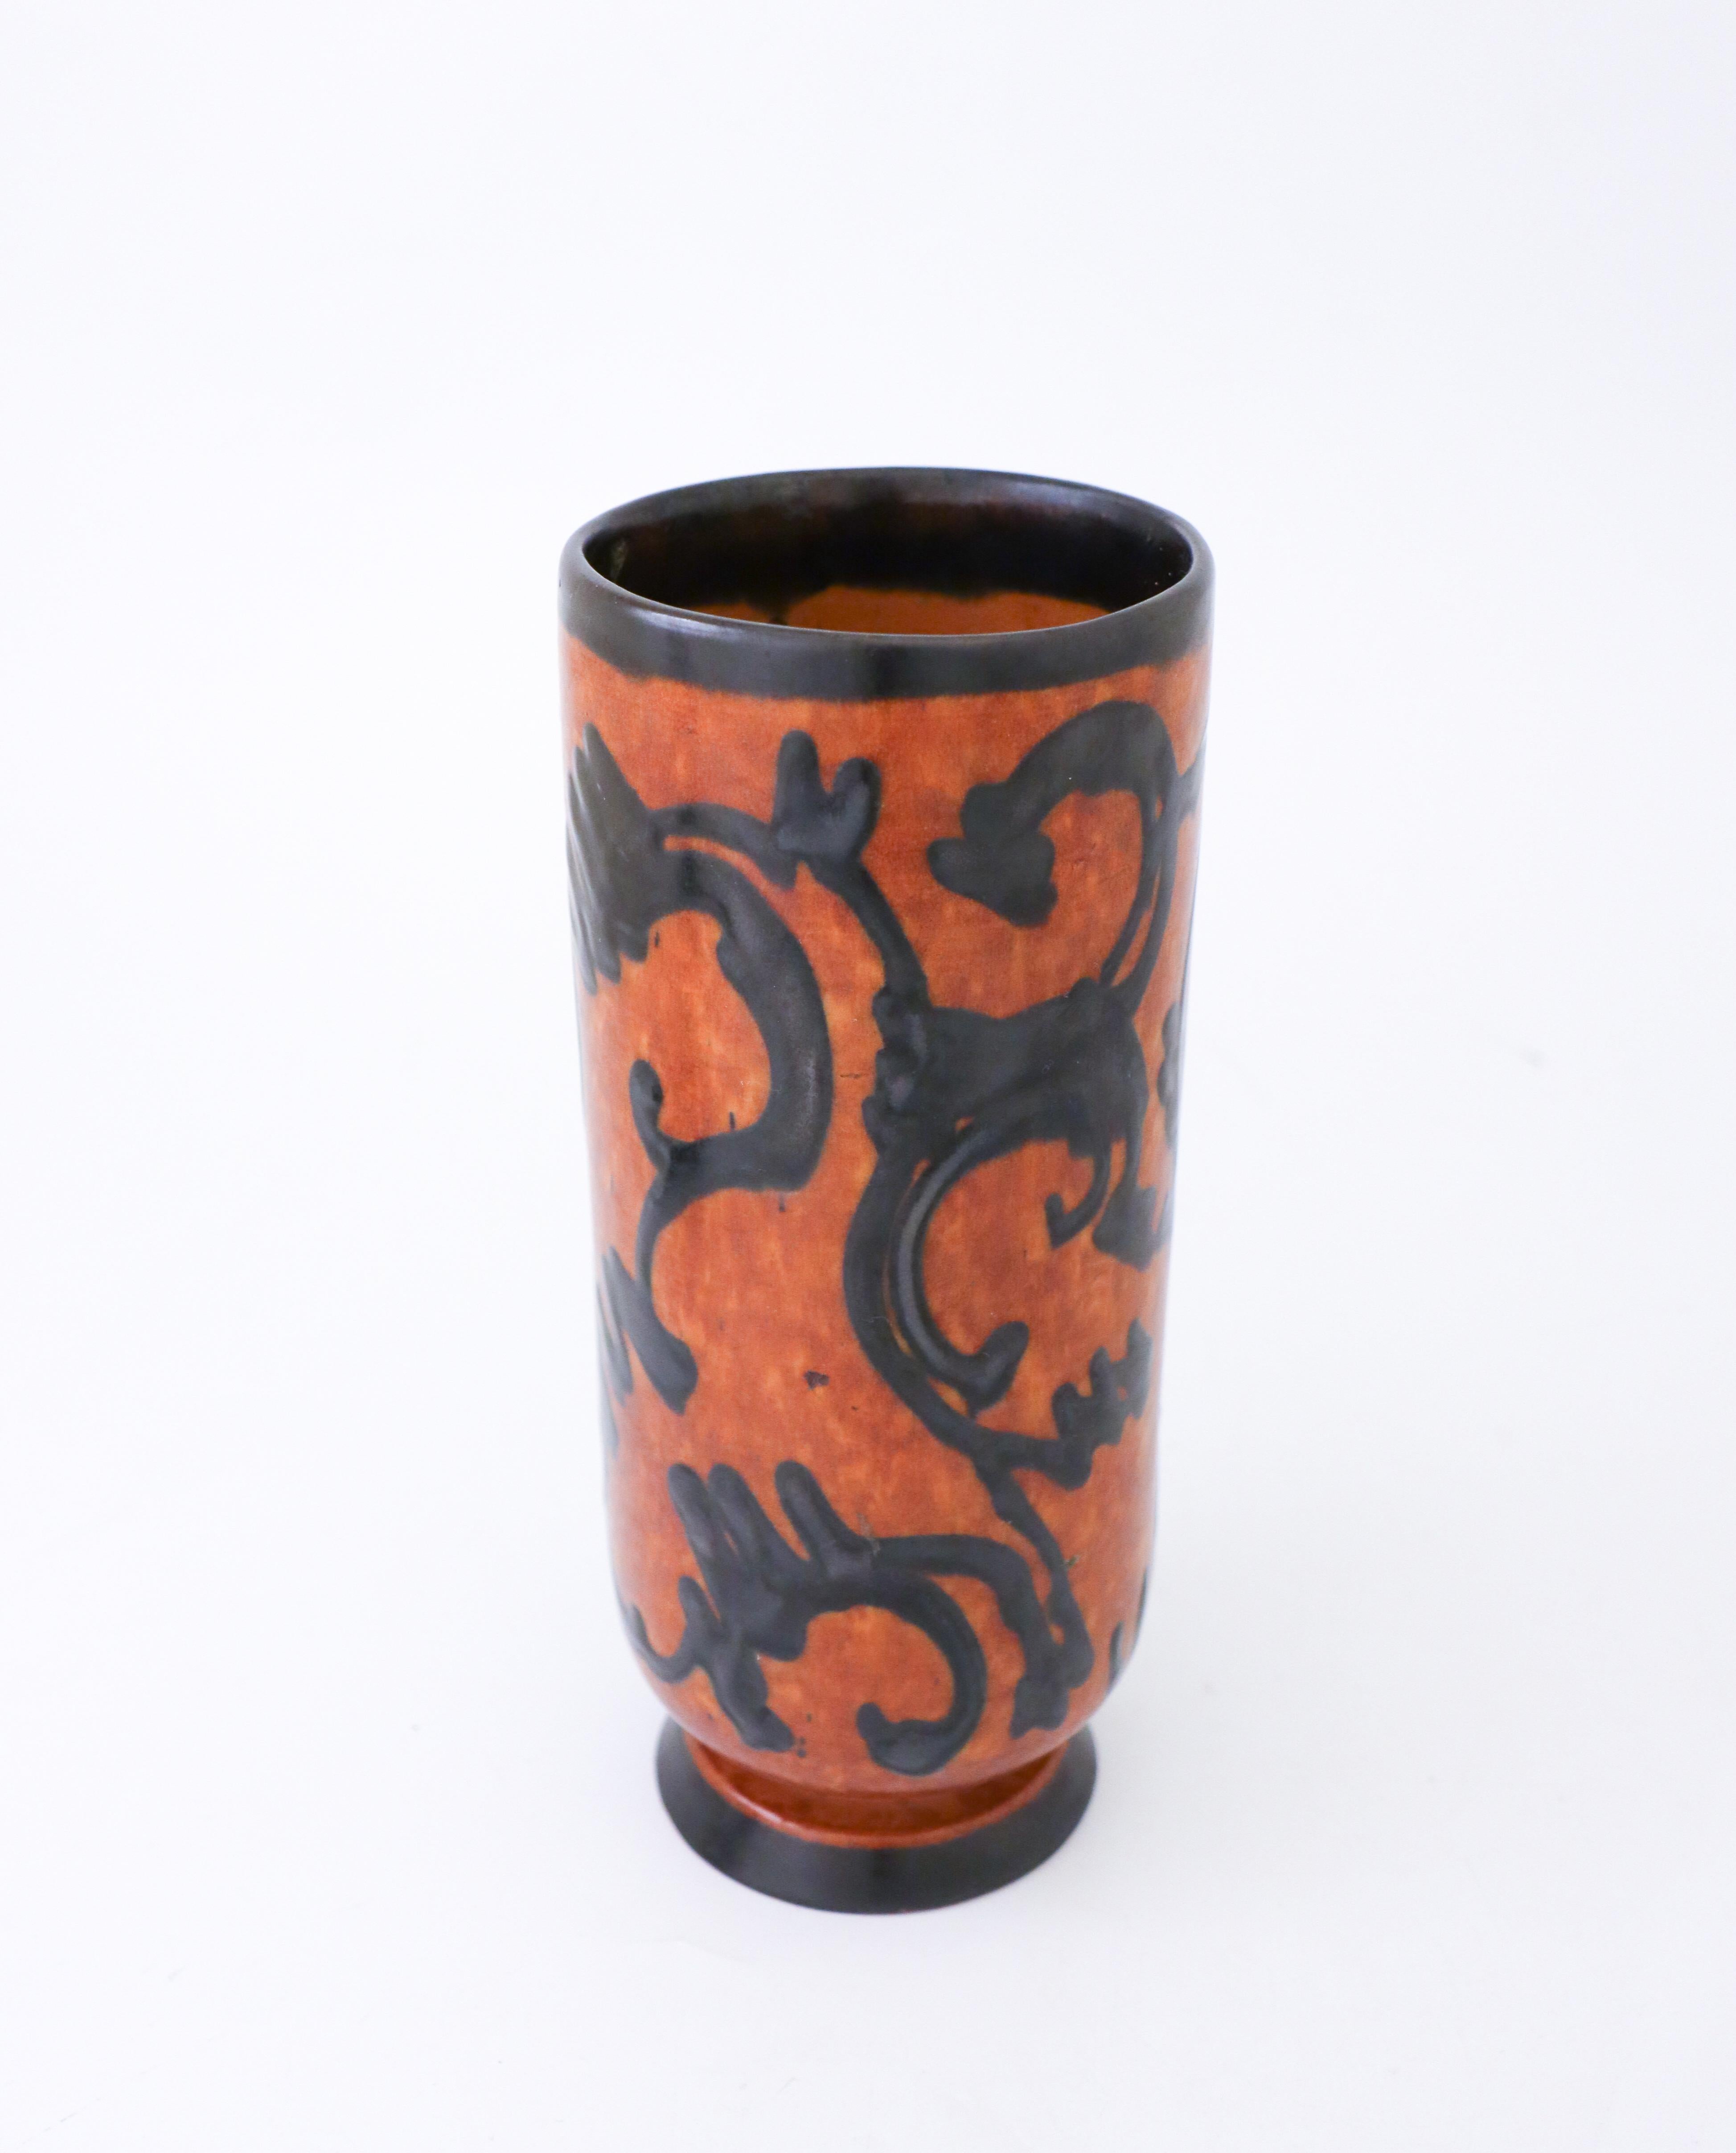 Ein Keramikgefäß im schönen Jugendstil von einem unbekannten Hersteller aus dem frühen 20. Jahrhundert. Die Vase ist 23 cm hoch und in sehr gutem Zustand, abgesehen von einigen kleinen Flecken.